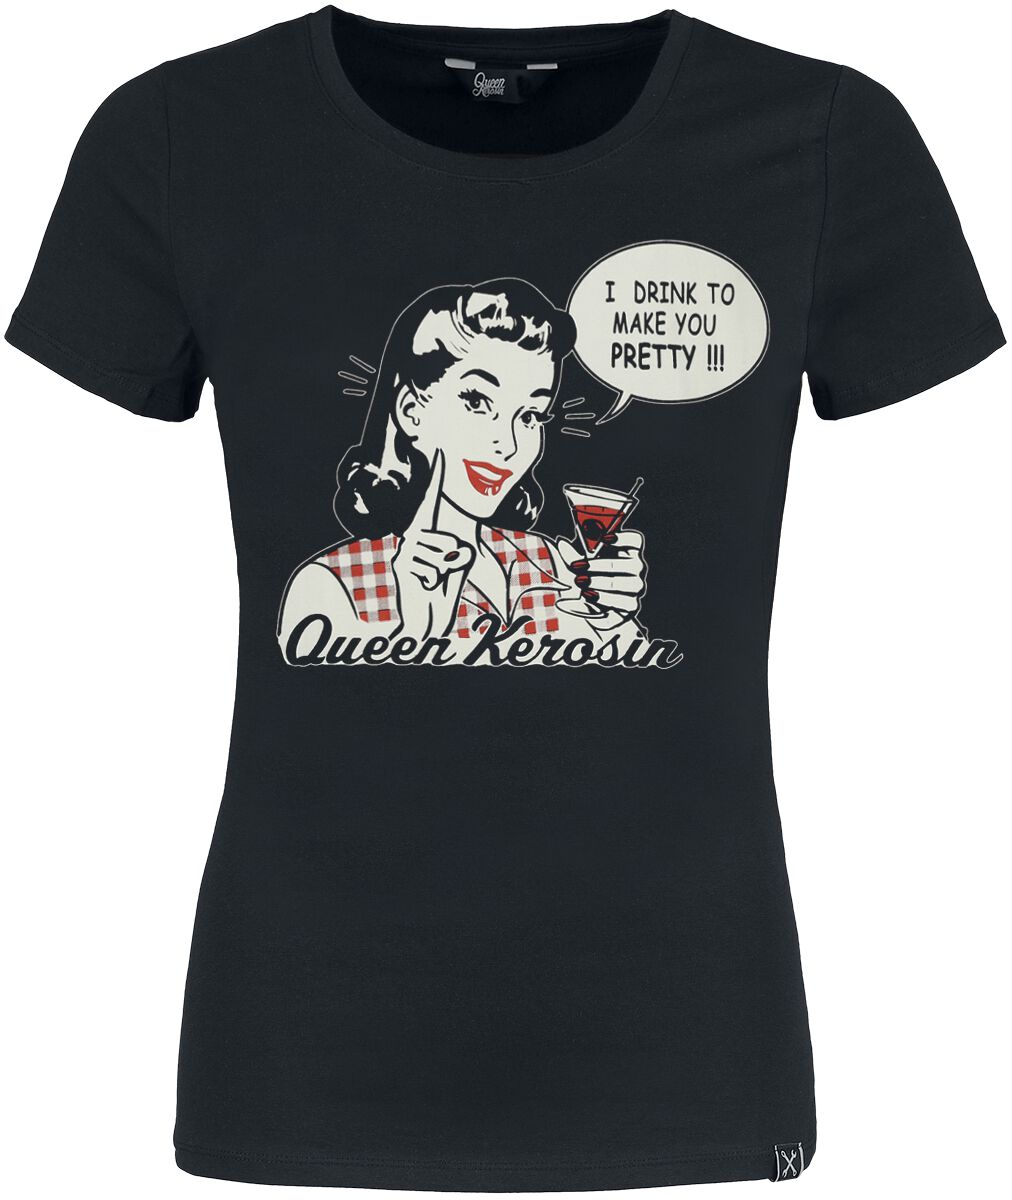 T-Shirt Manches courtes Rockabilly de Queen Kerosin - I Drink - XS à 4XL - pour Femme - noir